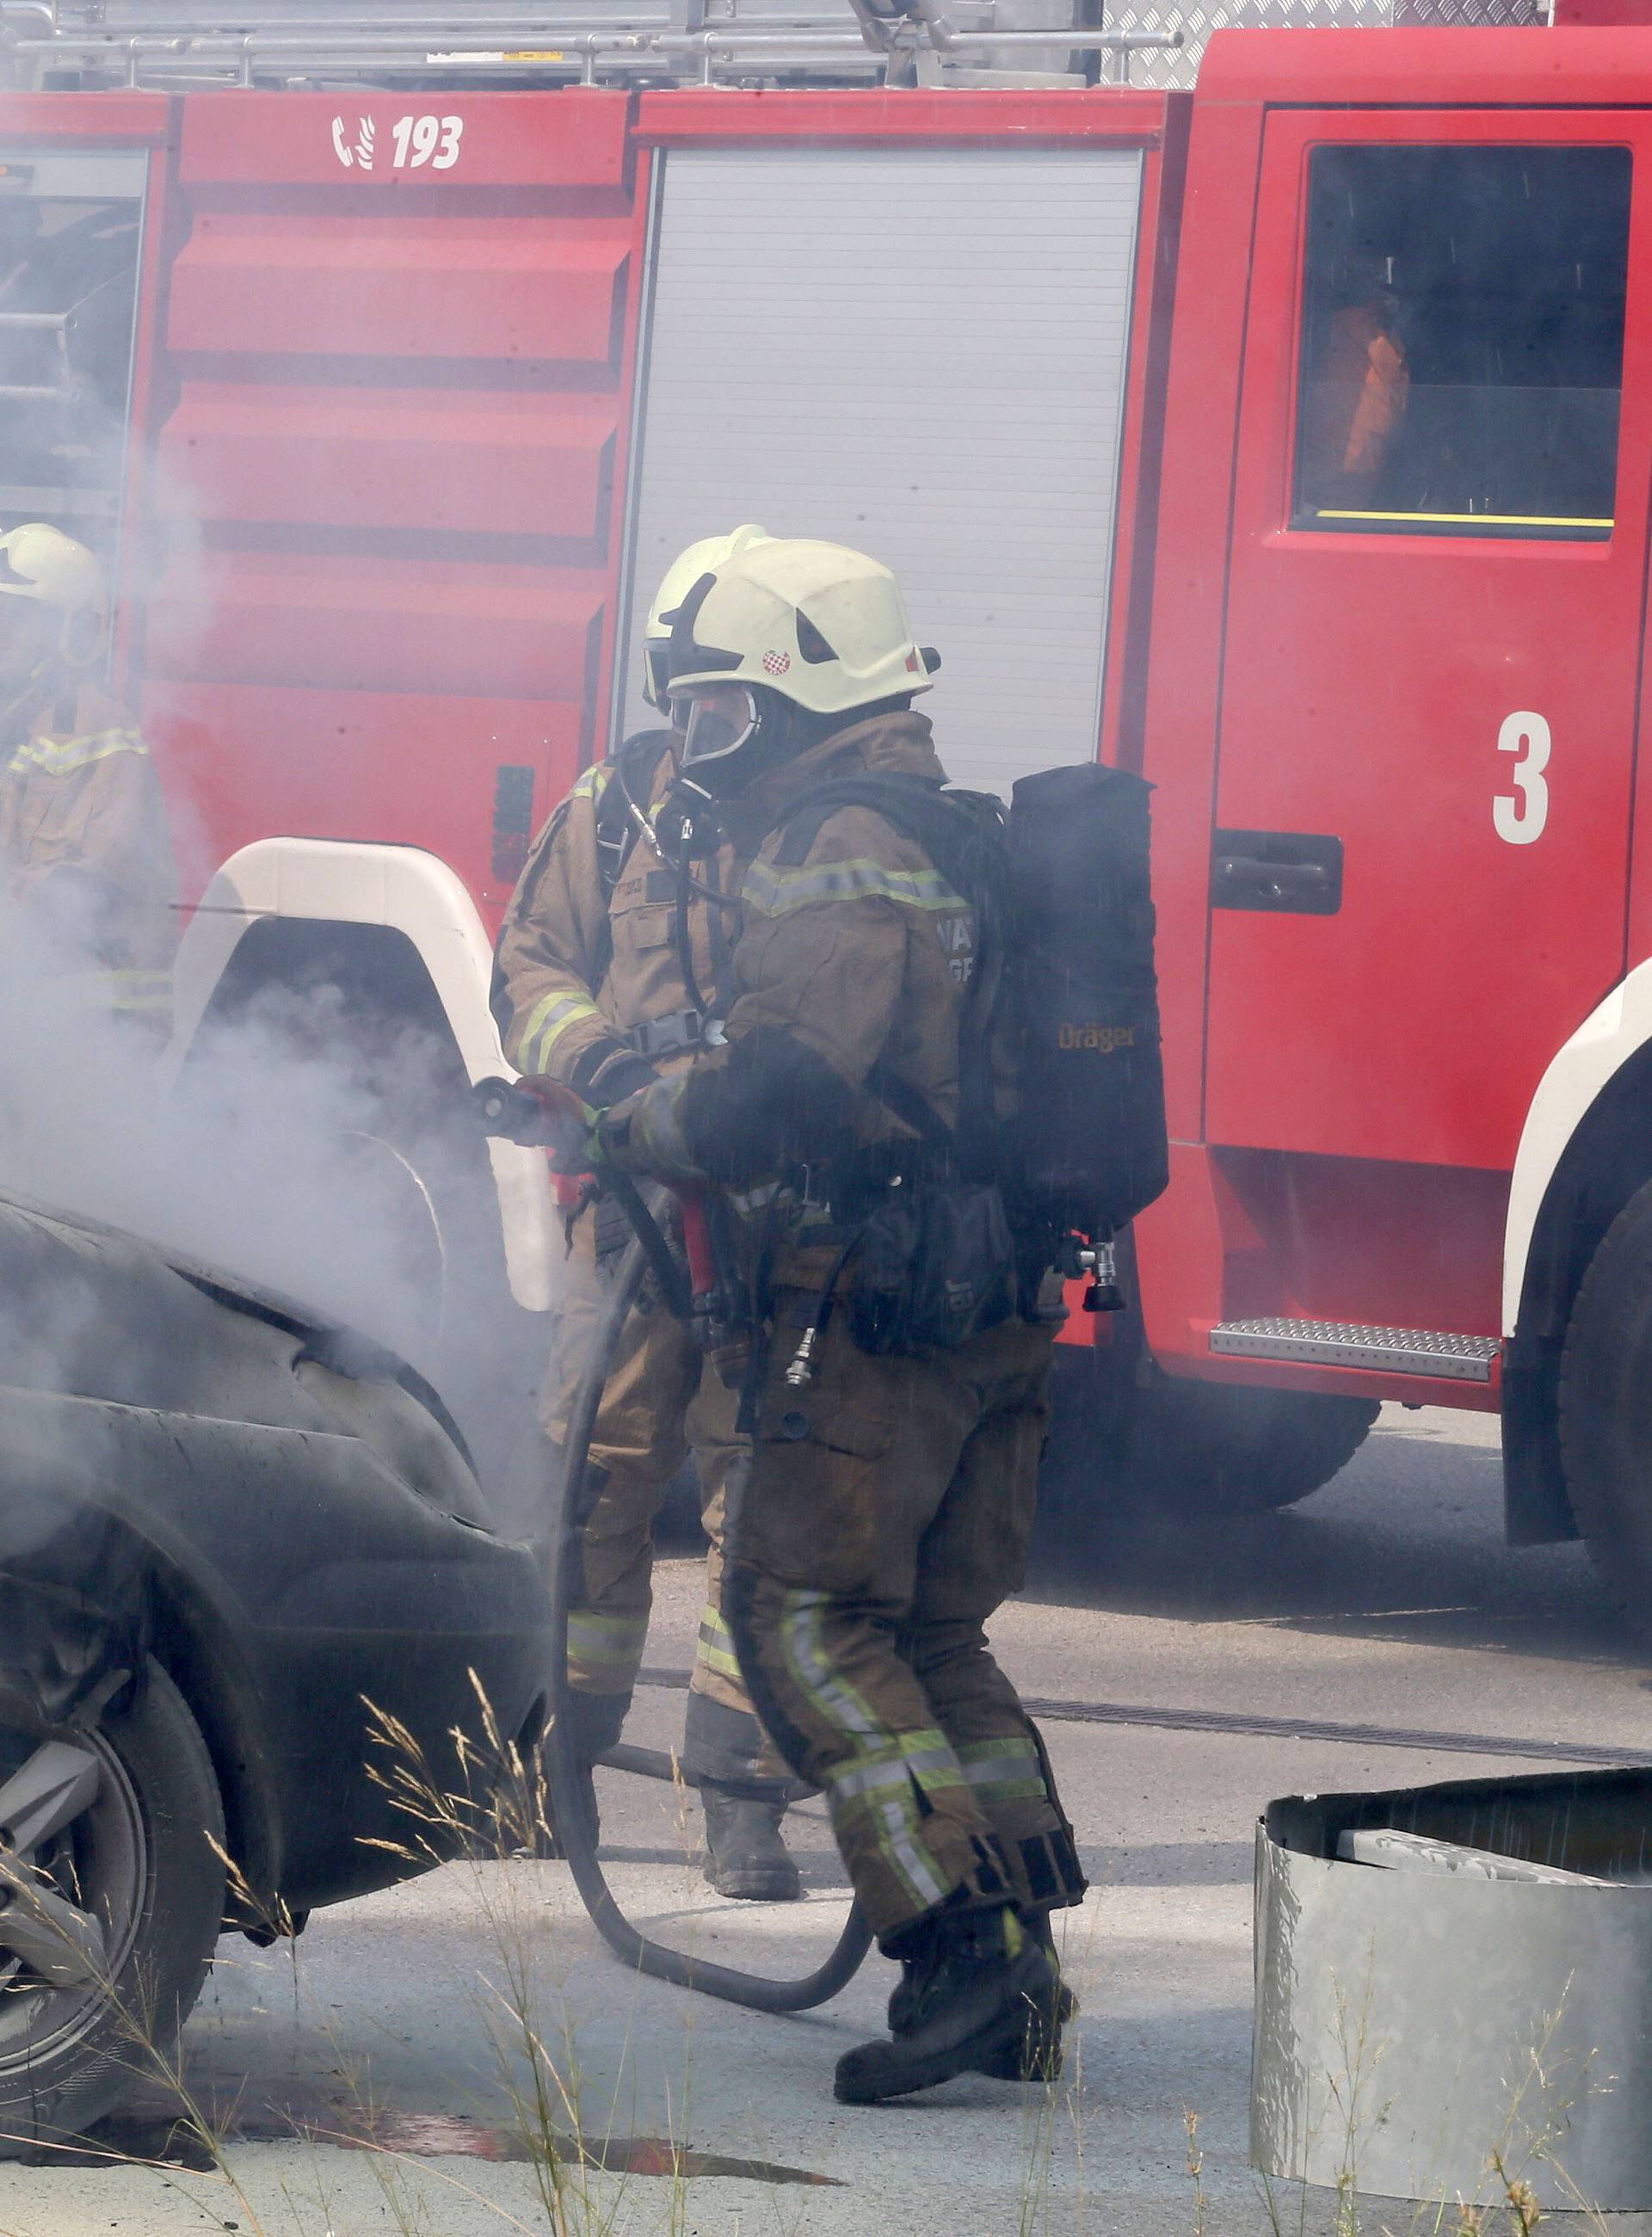 Split: Na ulazu u benzinsku postaju zapalio se osobni automobil